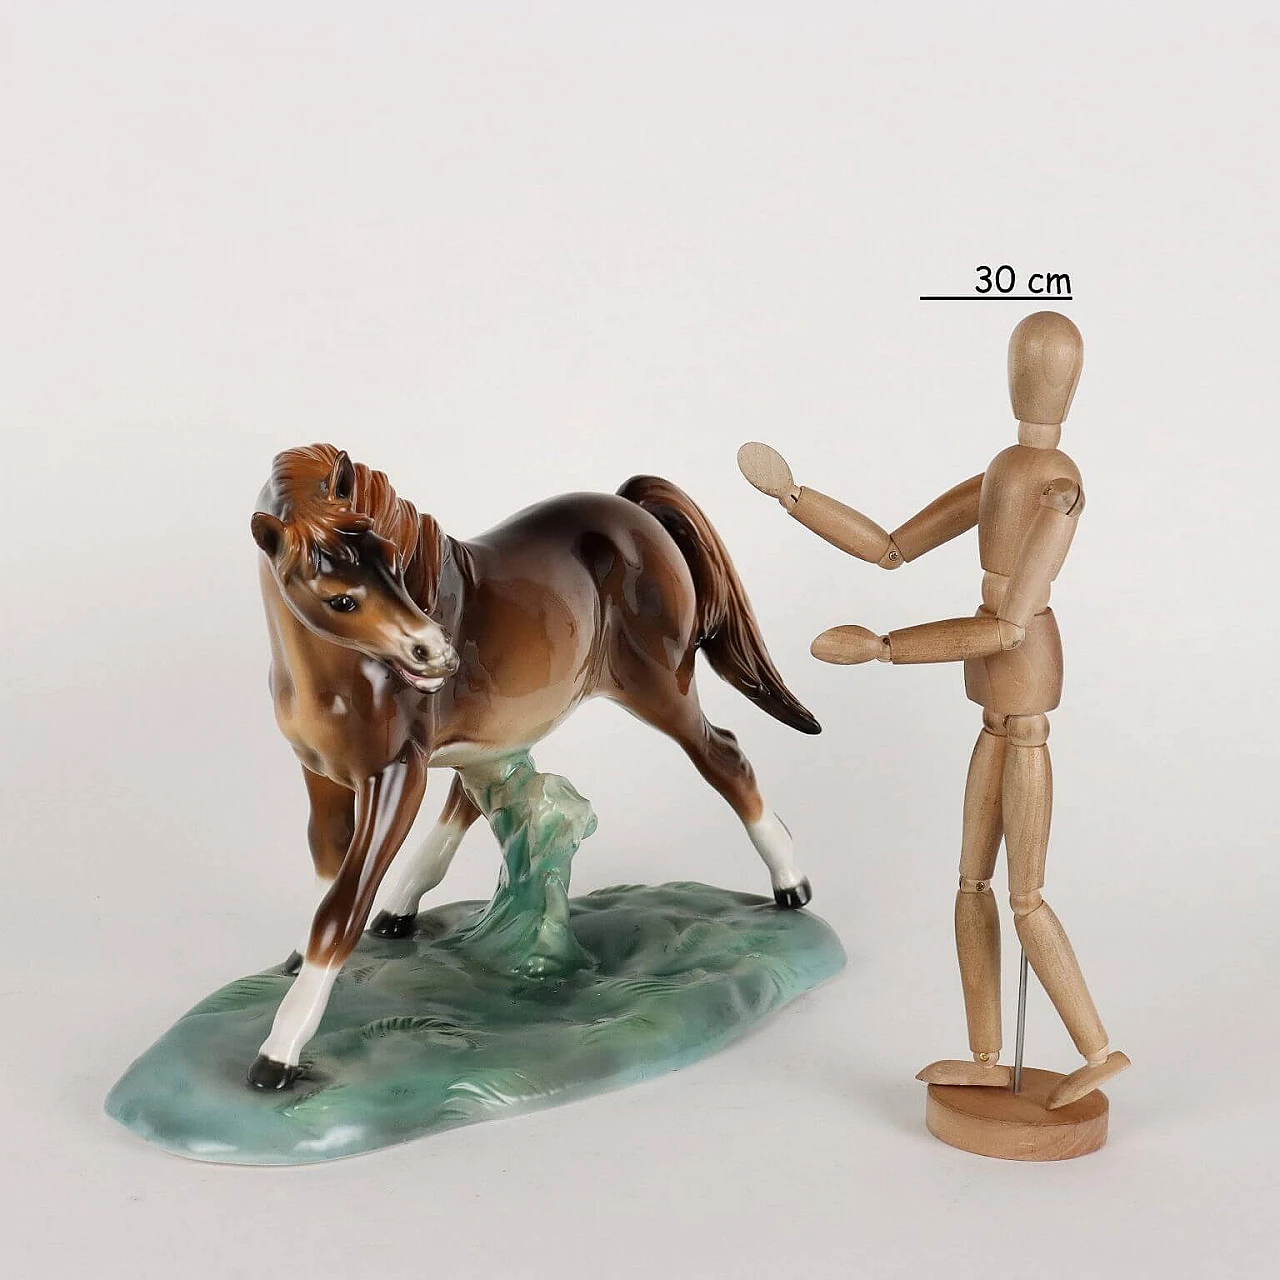 Ceramic horse sculpture by Antonio Ronzan 2